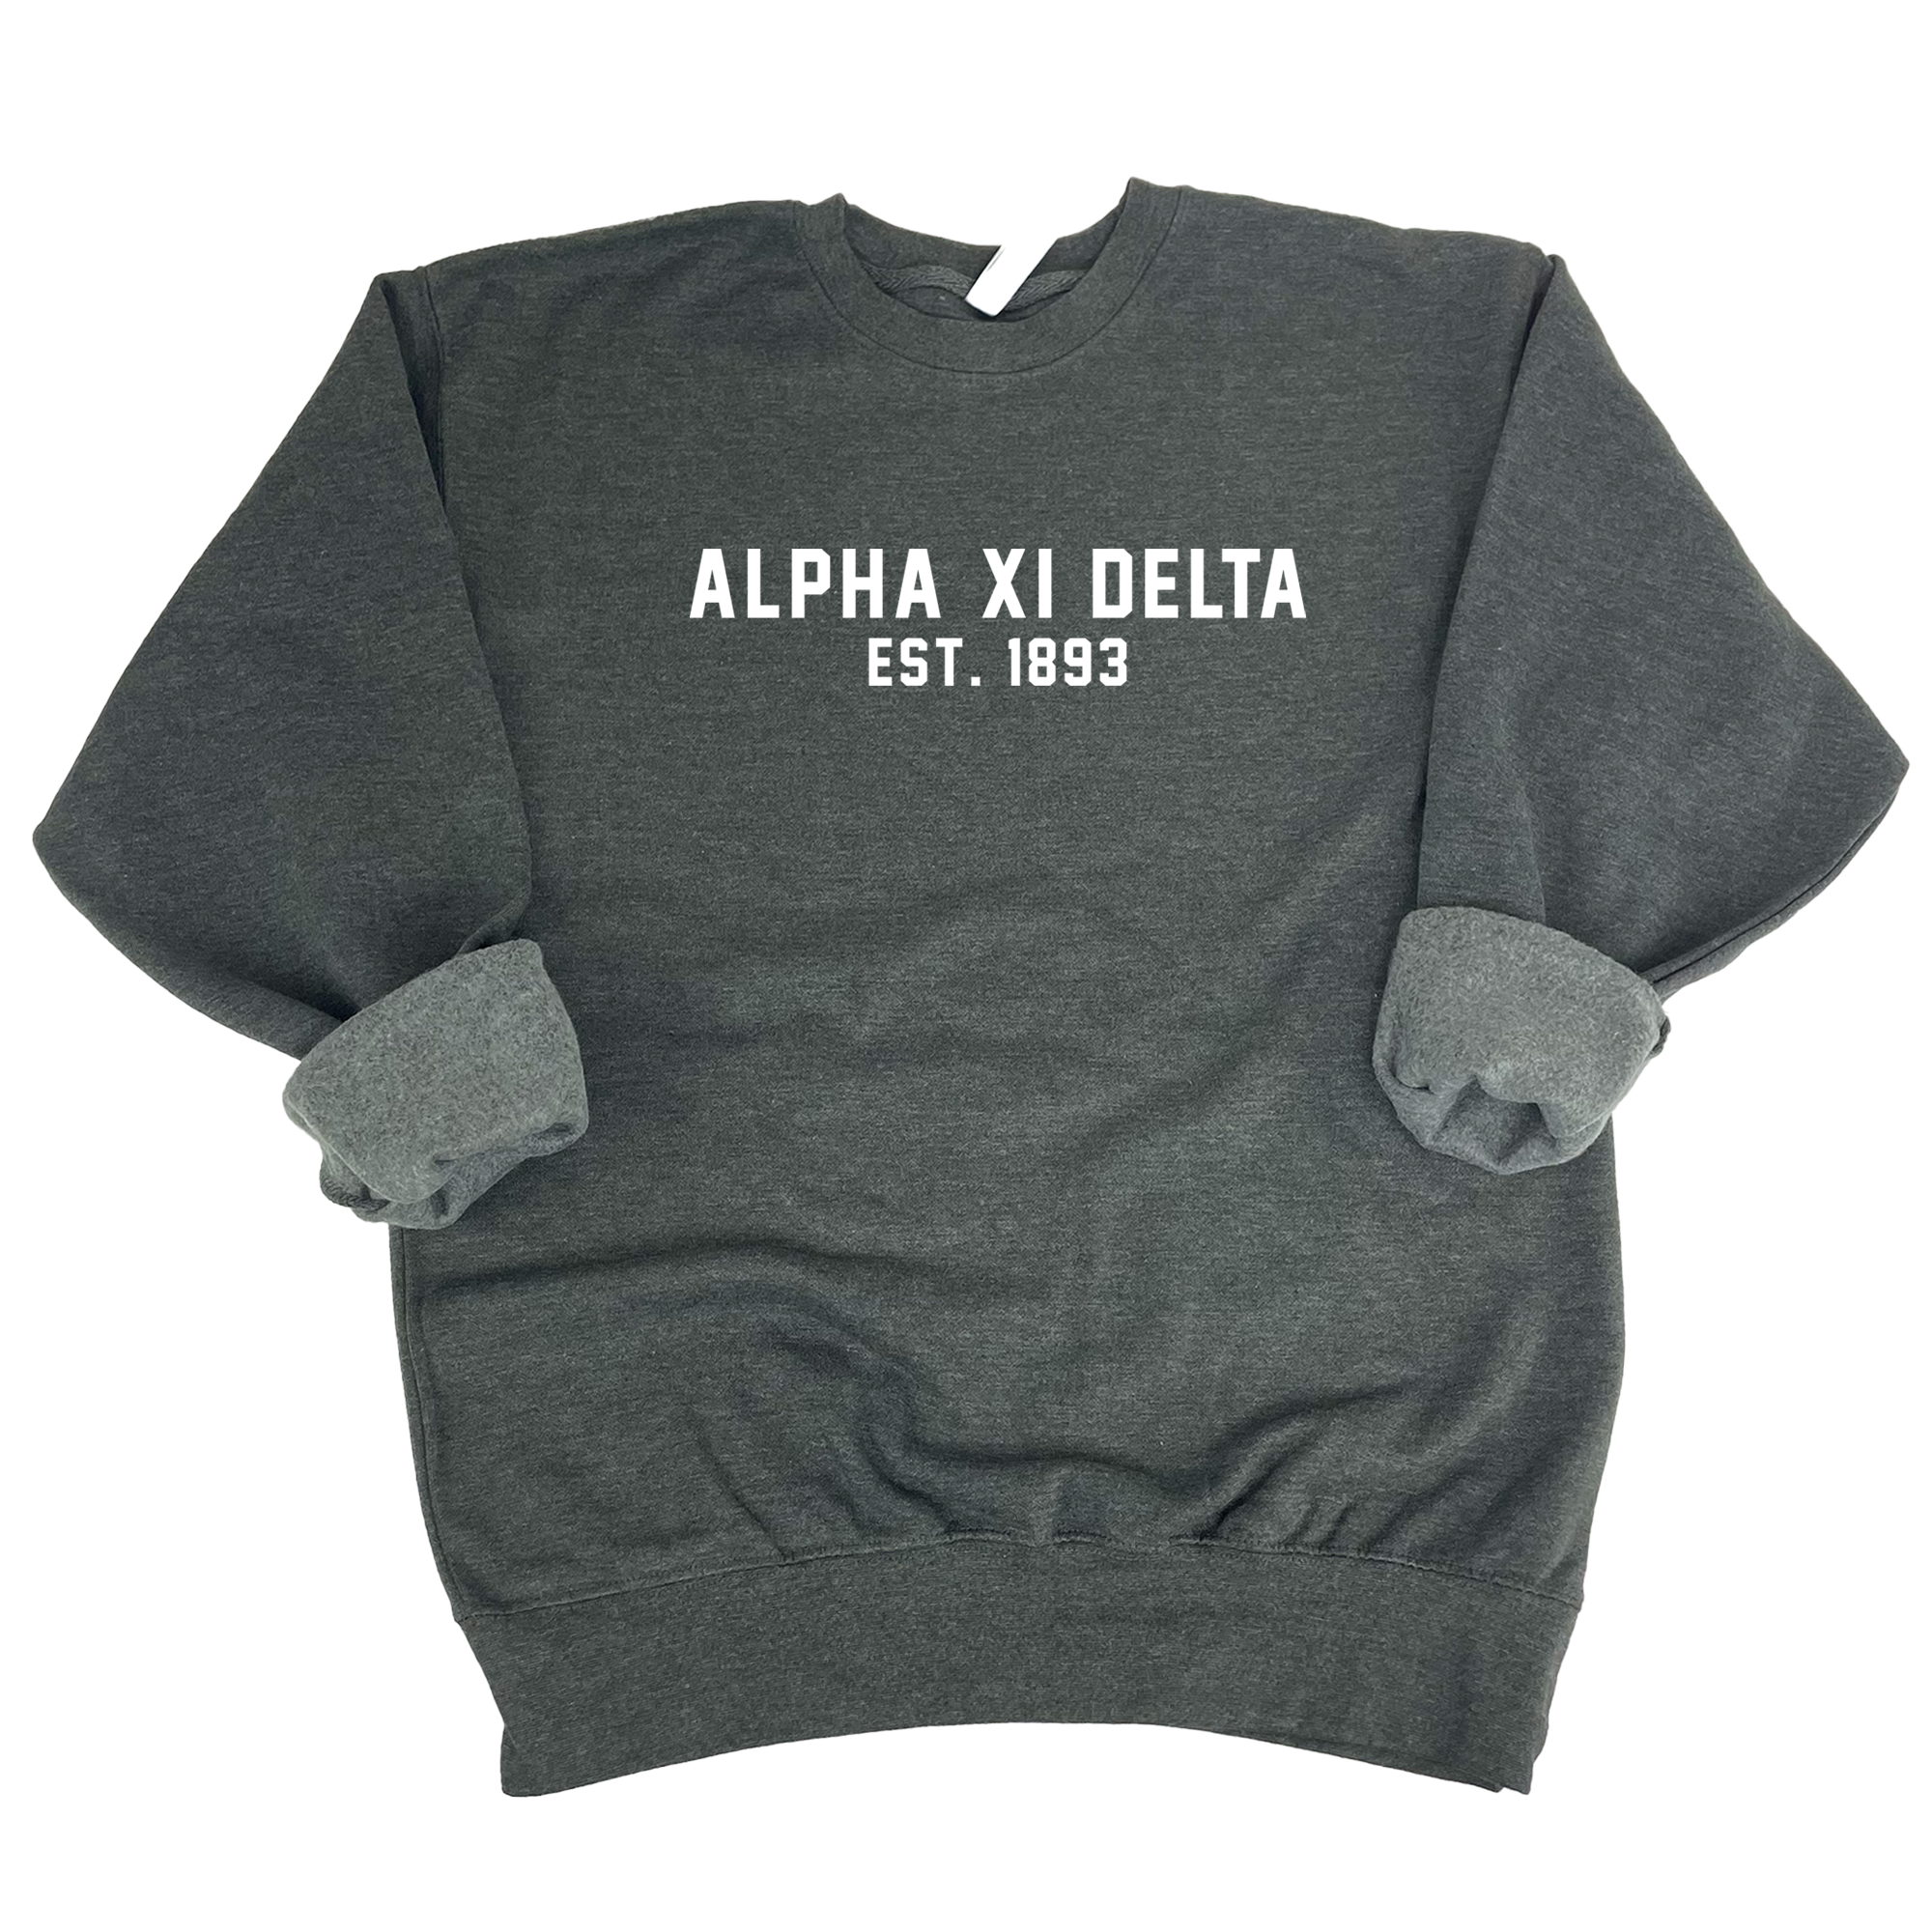 Alpha Xi Delta Est. 1893 Sweatshirt